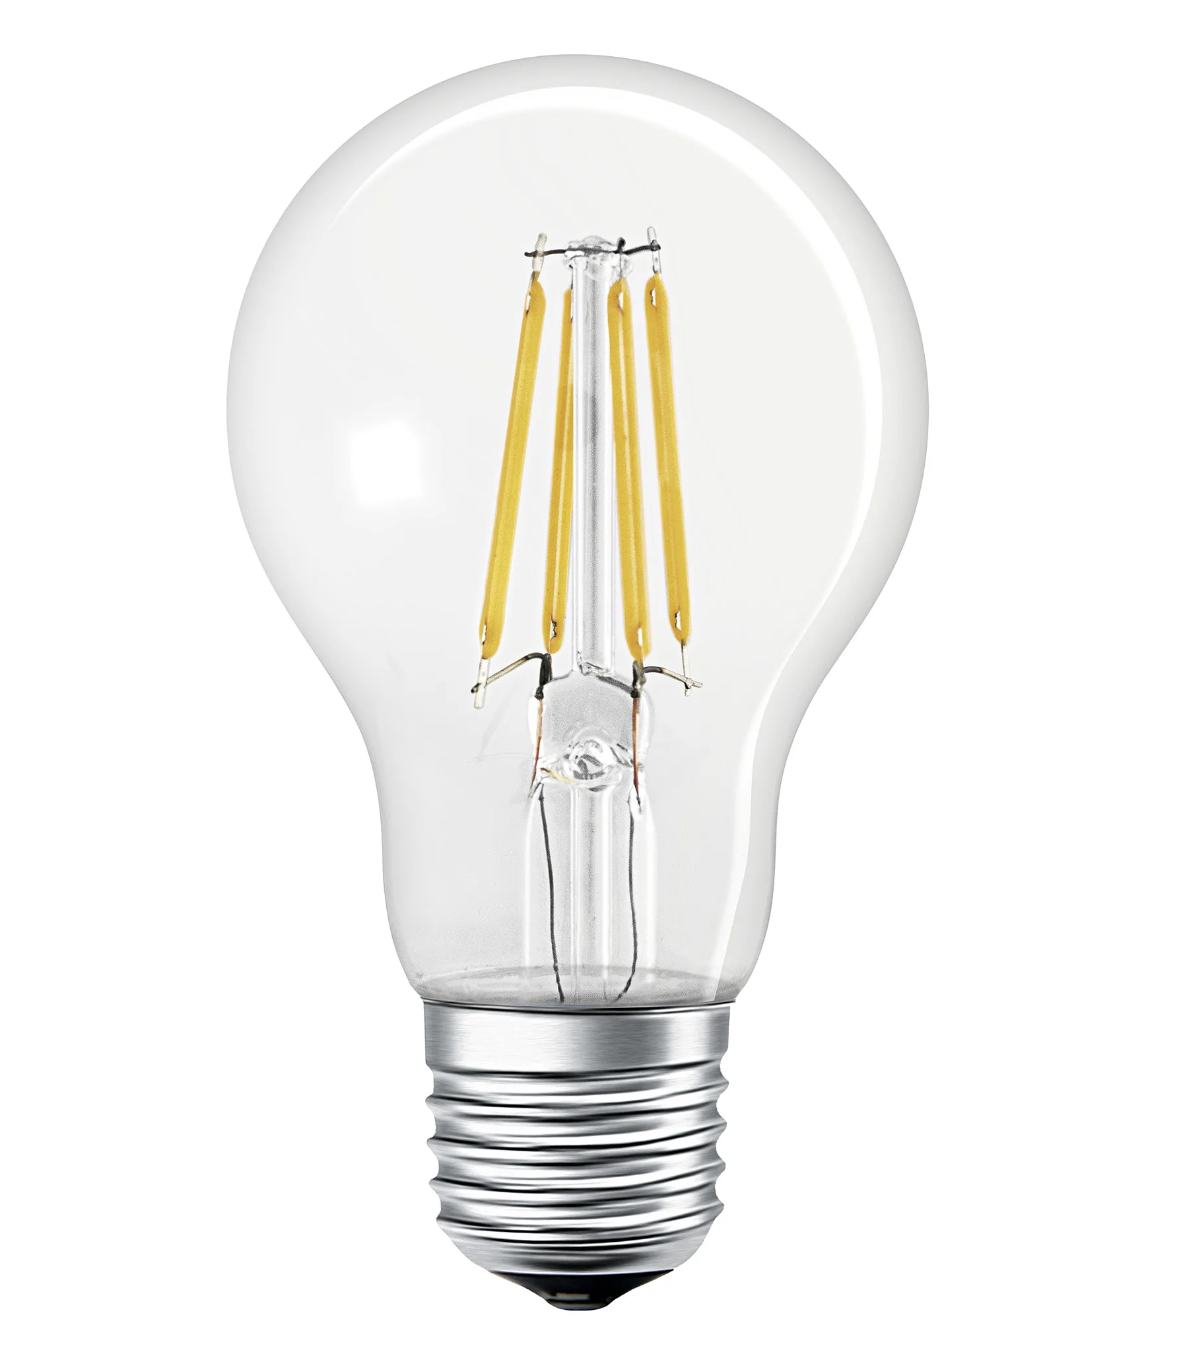 6W G9 LED Ampoule Dimmable équivalent 60W Halogène, Blanc Chaud